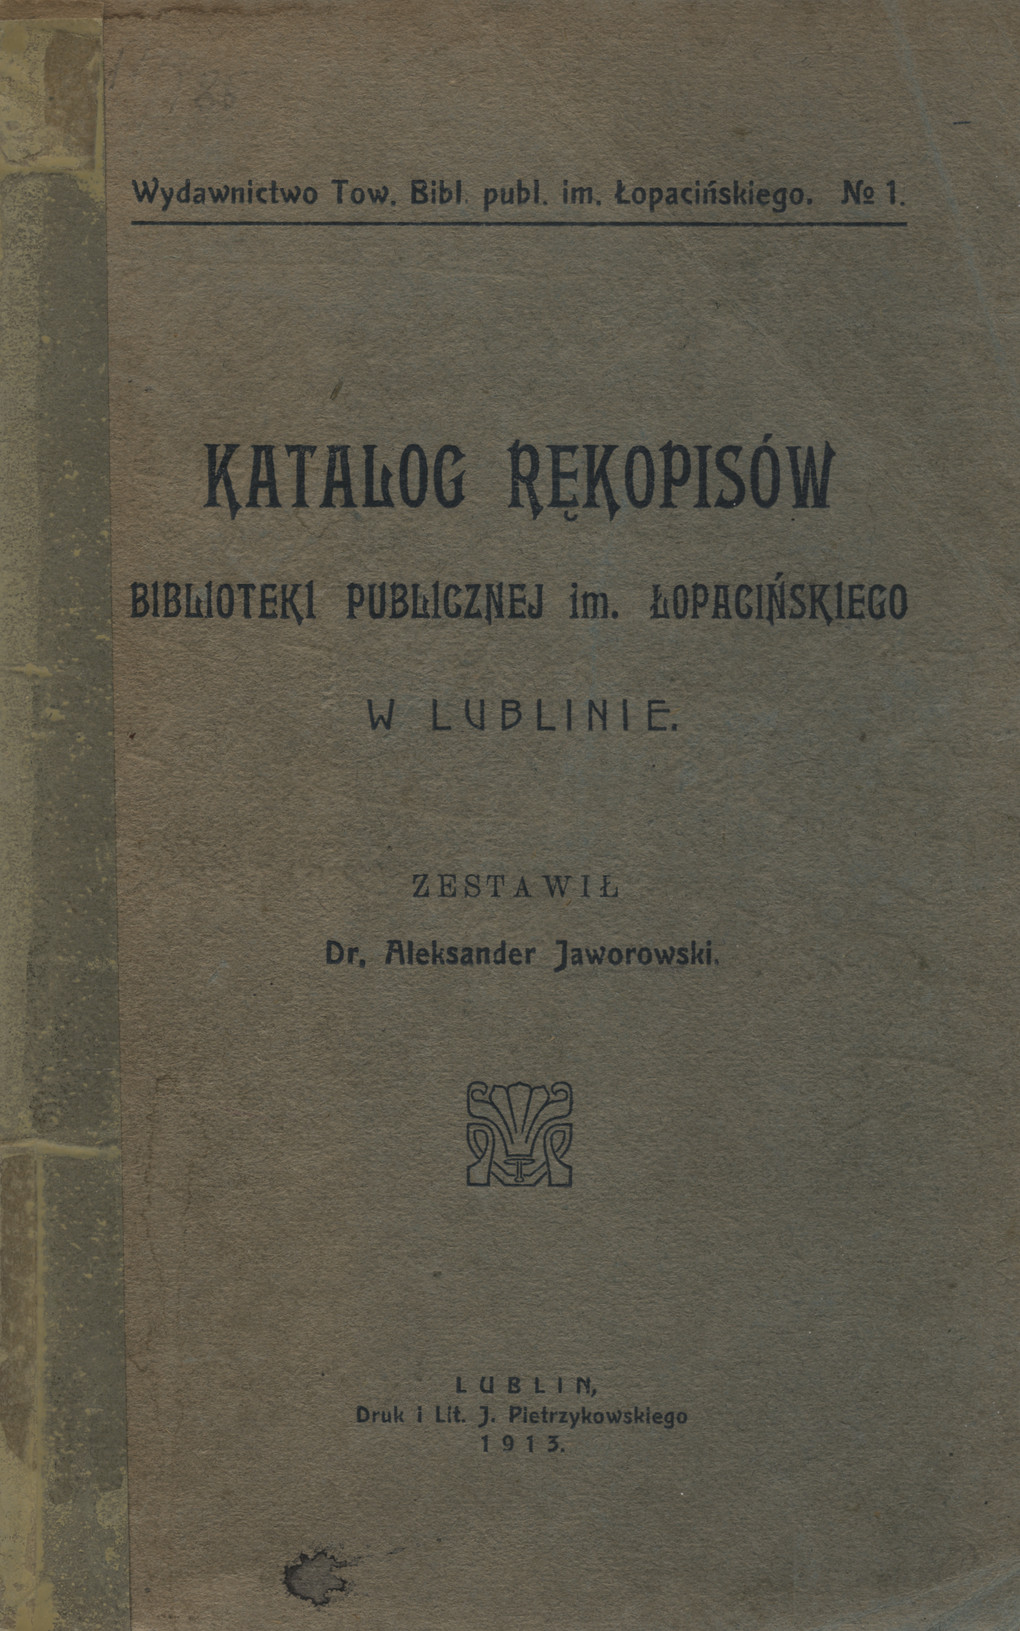 Katalog rękopisów Biblioteki Publicznej im. Łopacińskiego w Lublinie